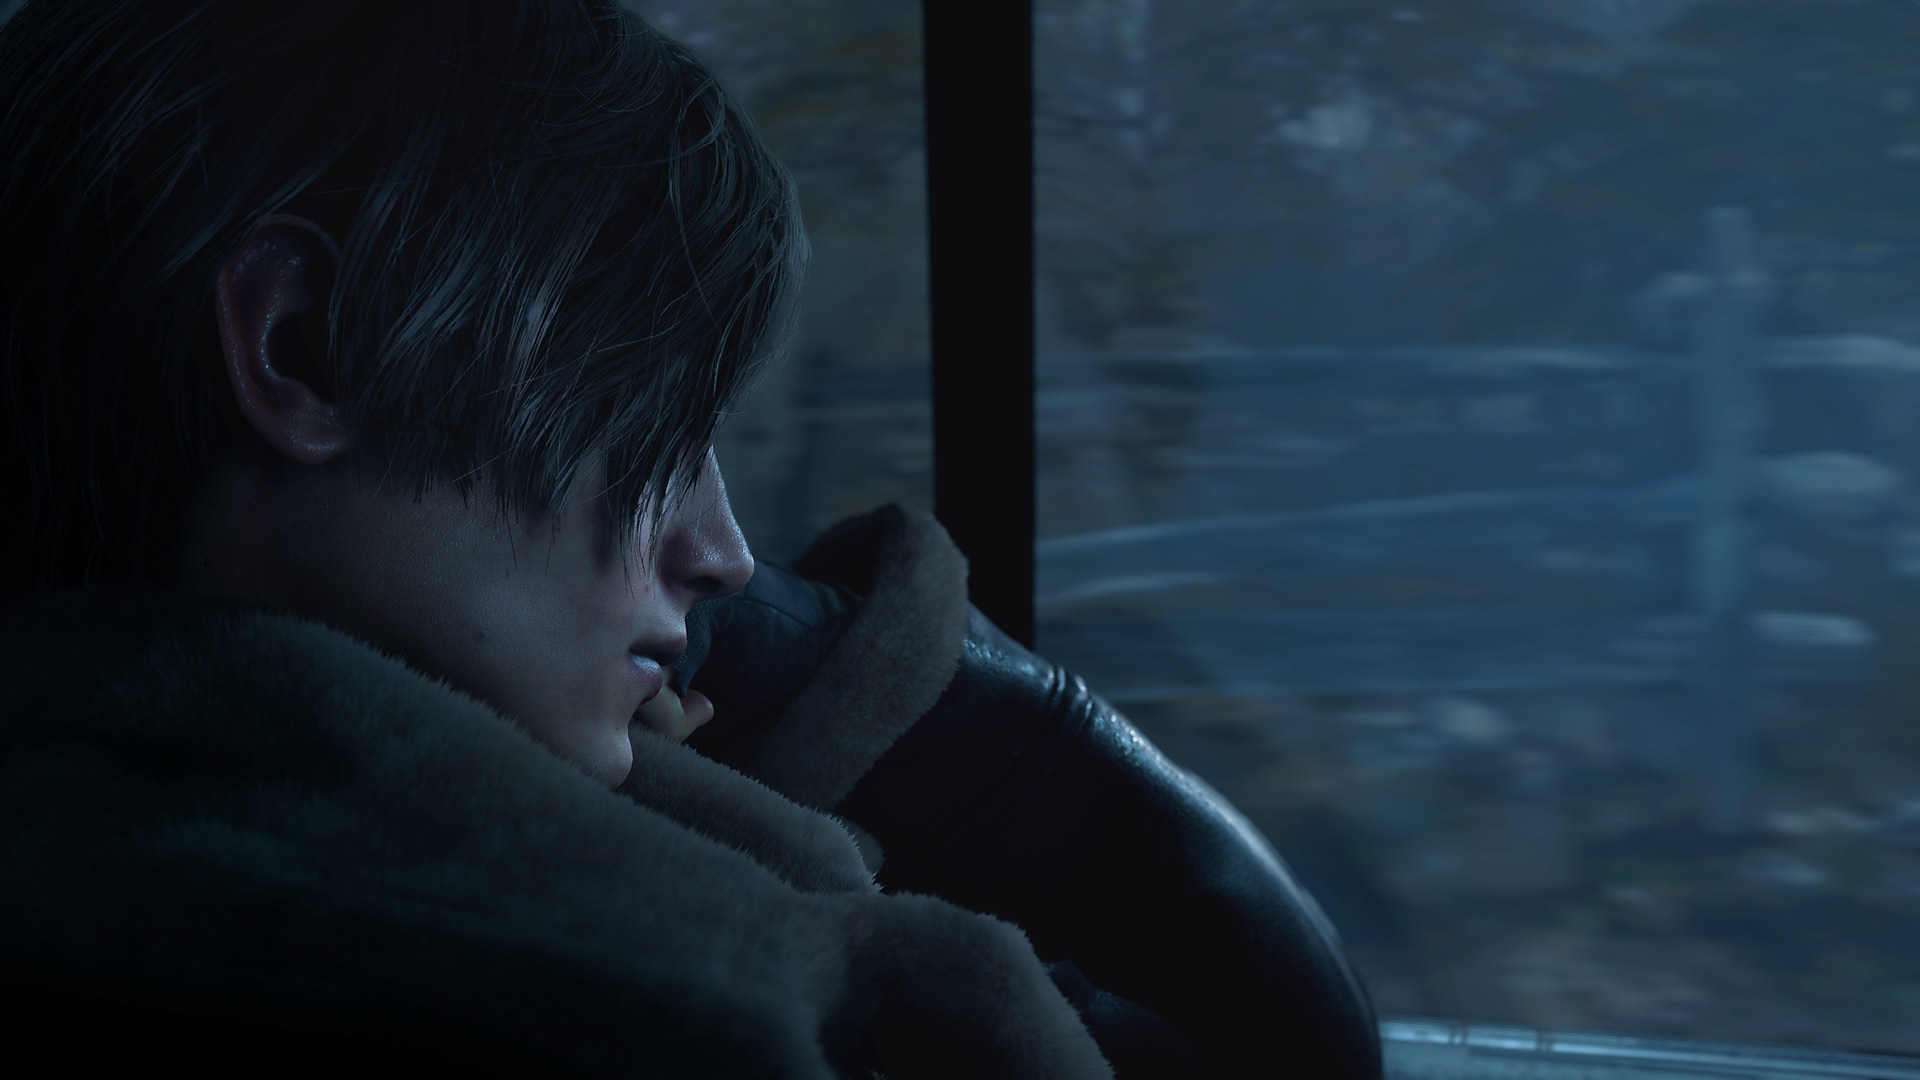 Captura de pantalla de Resident Evil 4 que muestra a Leon Kennedy montado en la parte trasera de un coche.